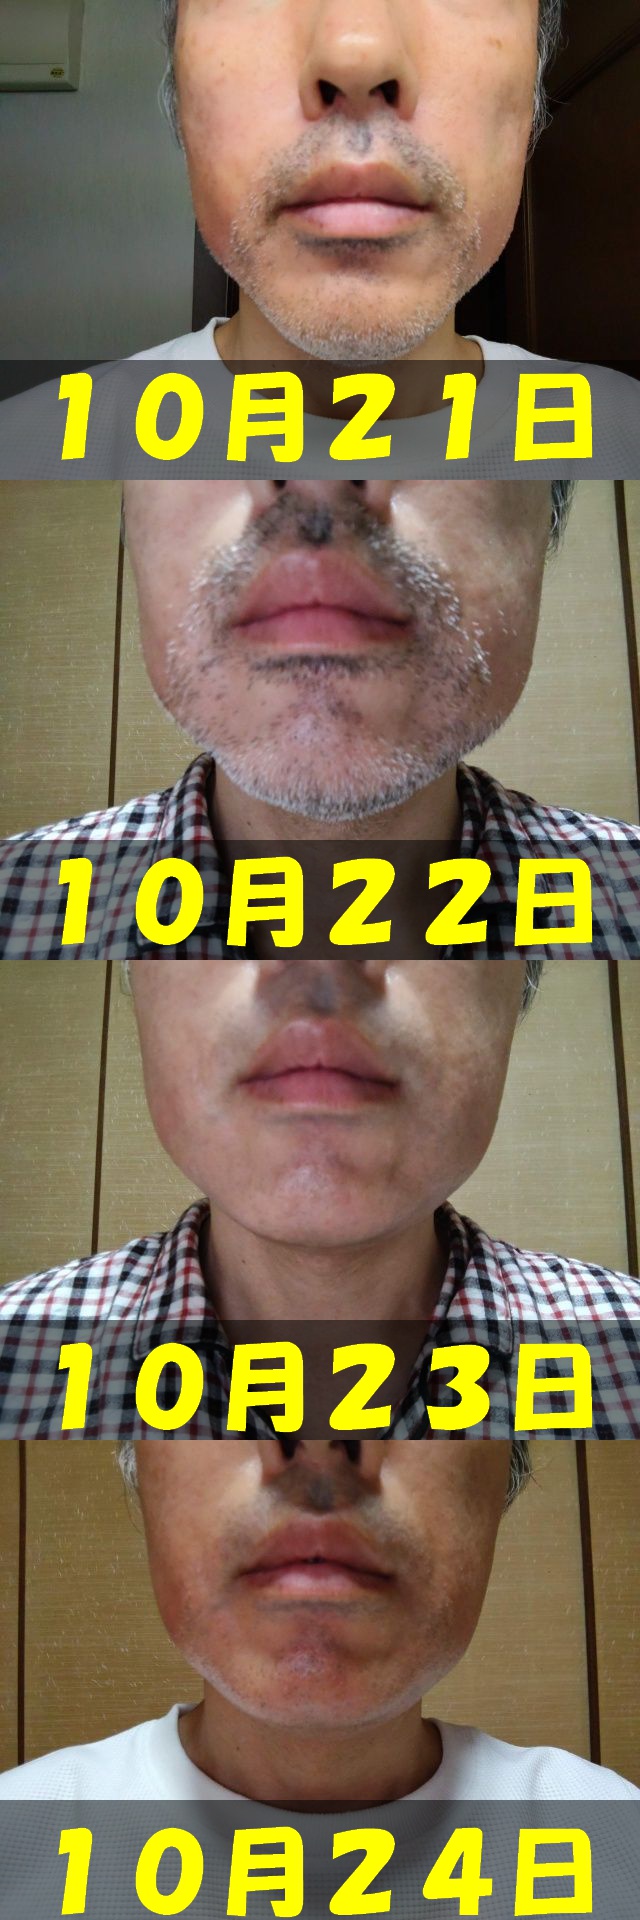 腫れの比較画像。１０月２１日から１０月２４日までの顔正面画面を１枚に結合した画像。